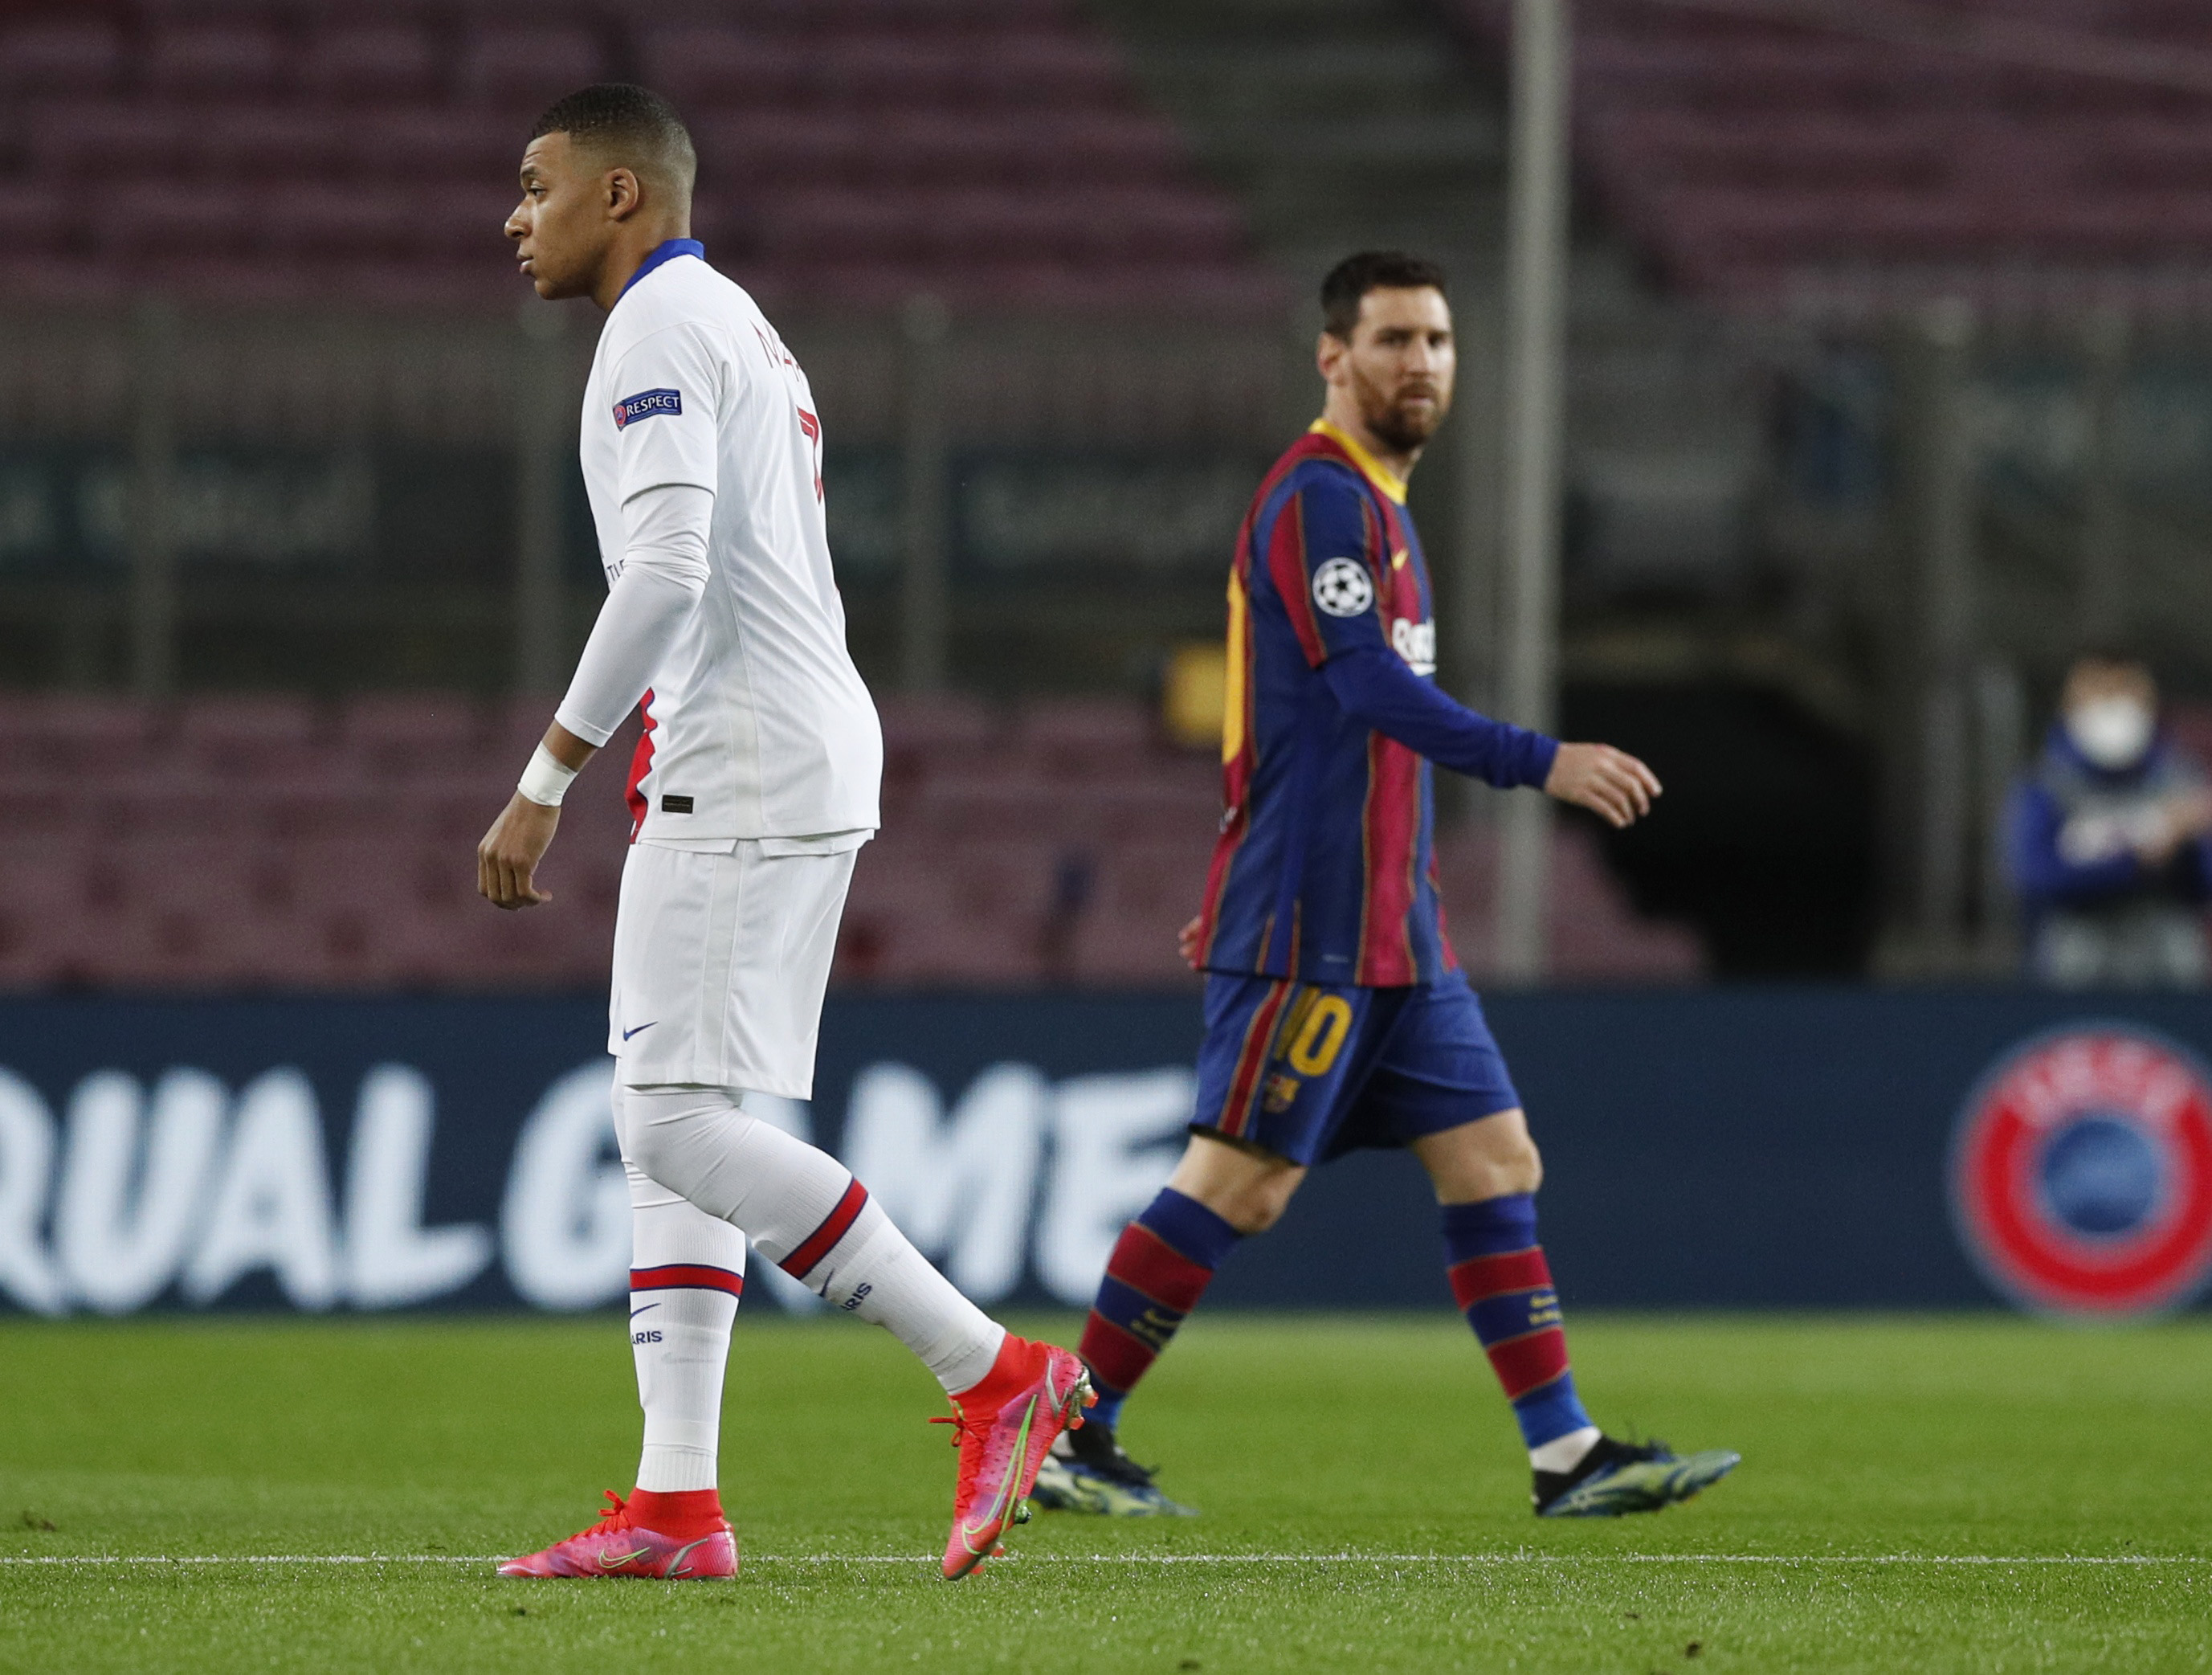 Messi vs Mbappé, la gran atracción del duelo entre Barcelona y PSG (REUTERS/Albert Gea)